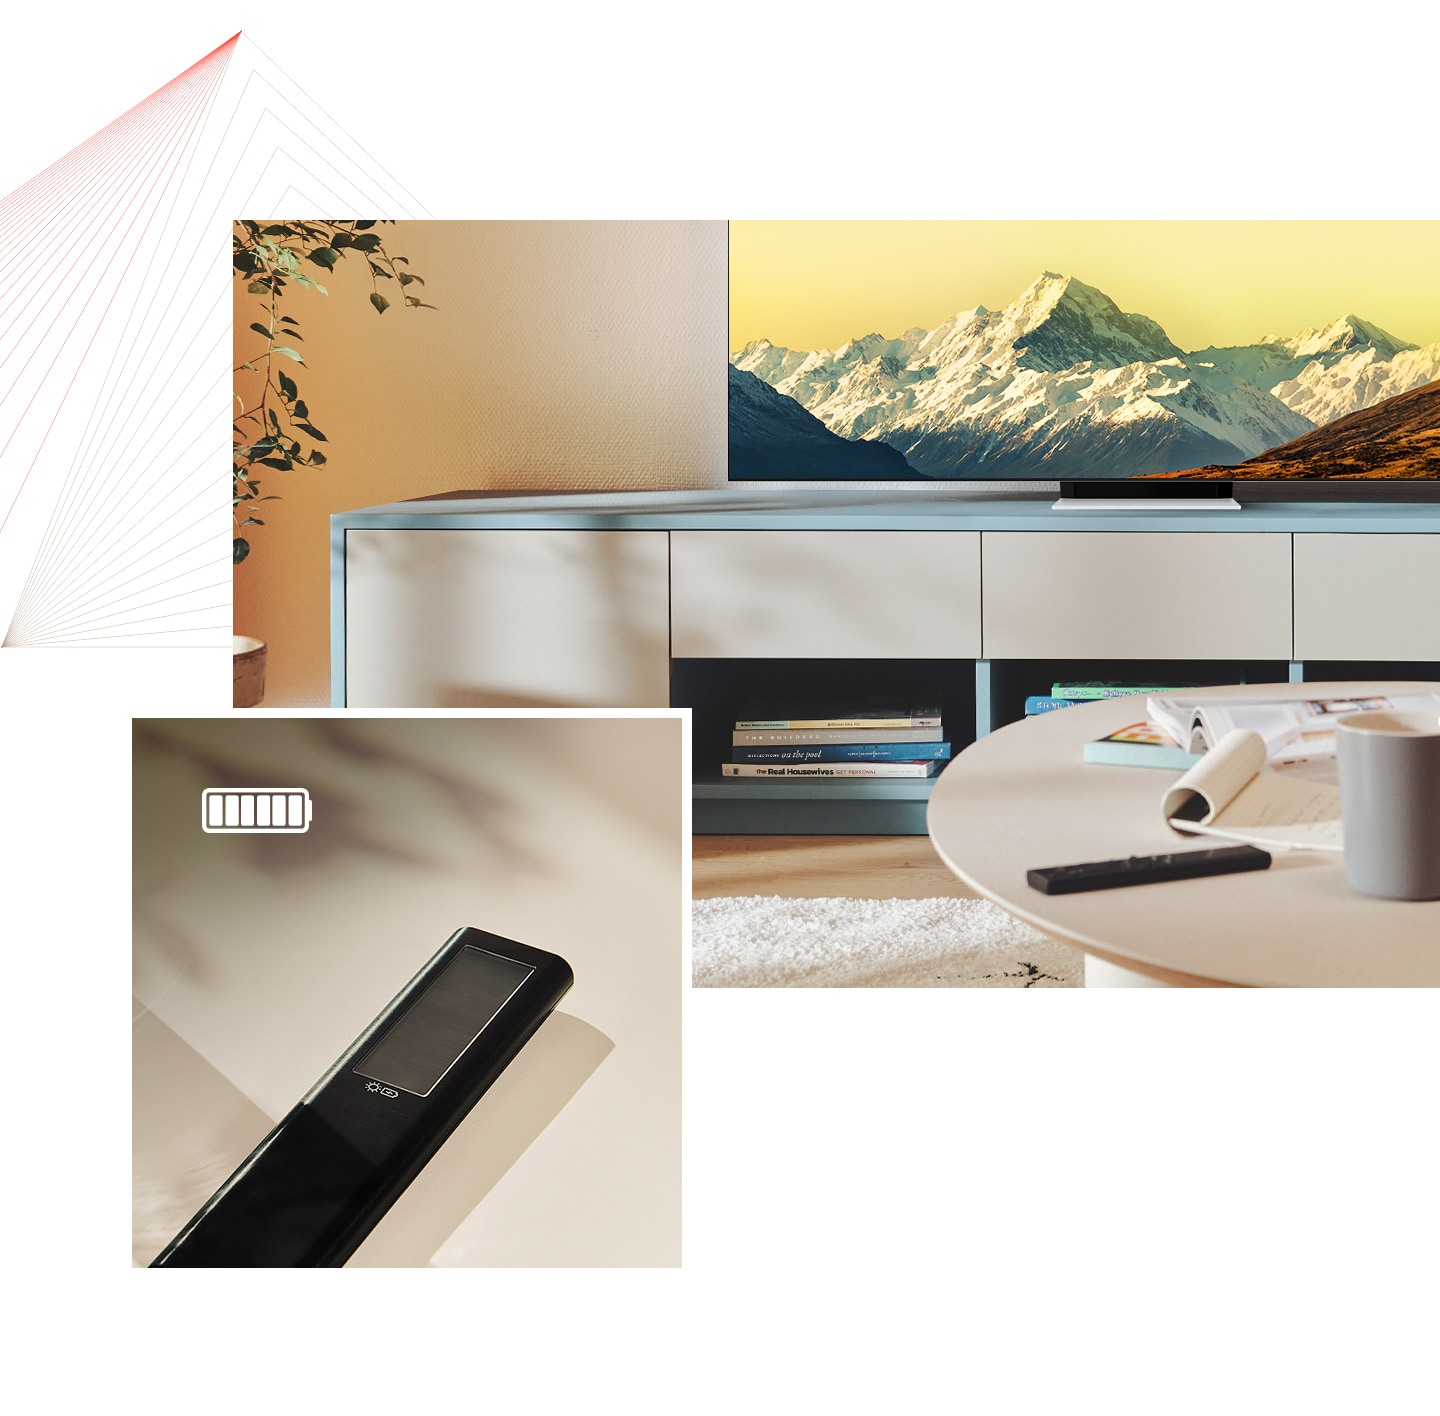 Πρώτον, το τηλεχειριστήριο Solarcell βρίσκεται σε ένα τραπέζι σε ένα φωτεινό δωμάτιο με τη Neo Qled. Δεύτερον, το τηλεχειριστήριο Solarcell είναι στην οθόνη με ένα πλήρως φορτισμένο εικονίδιο μπαταρίας.